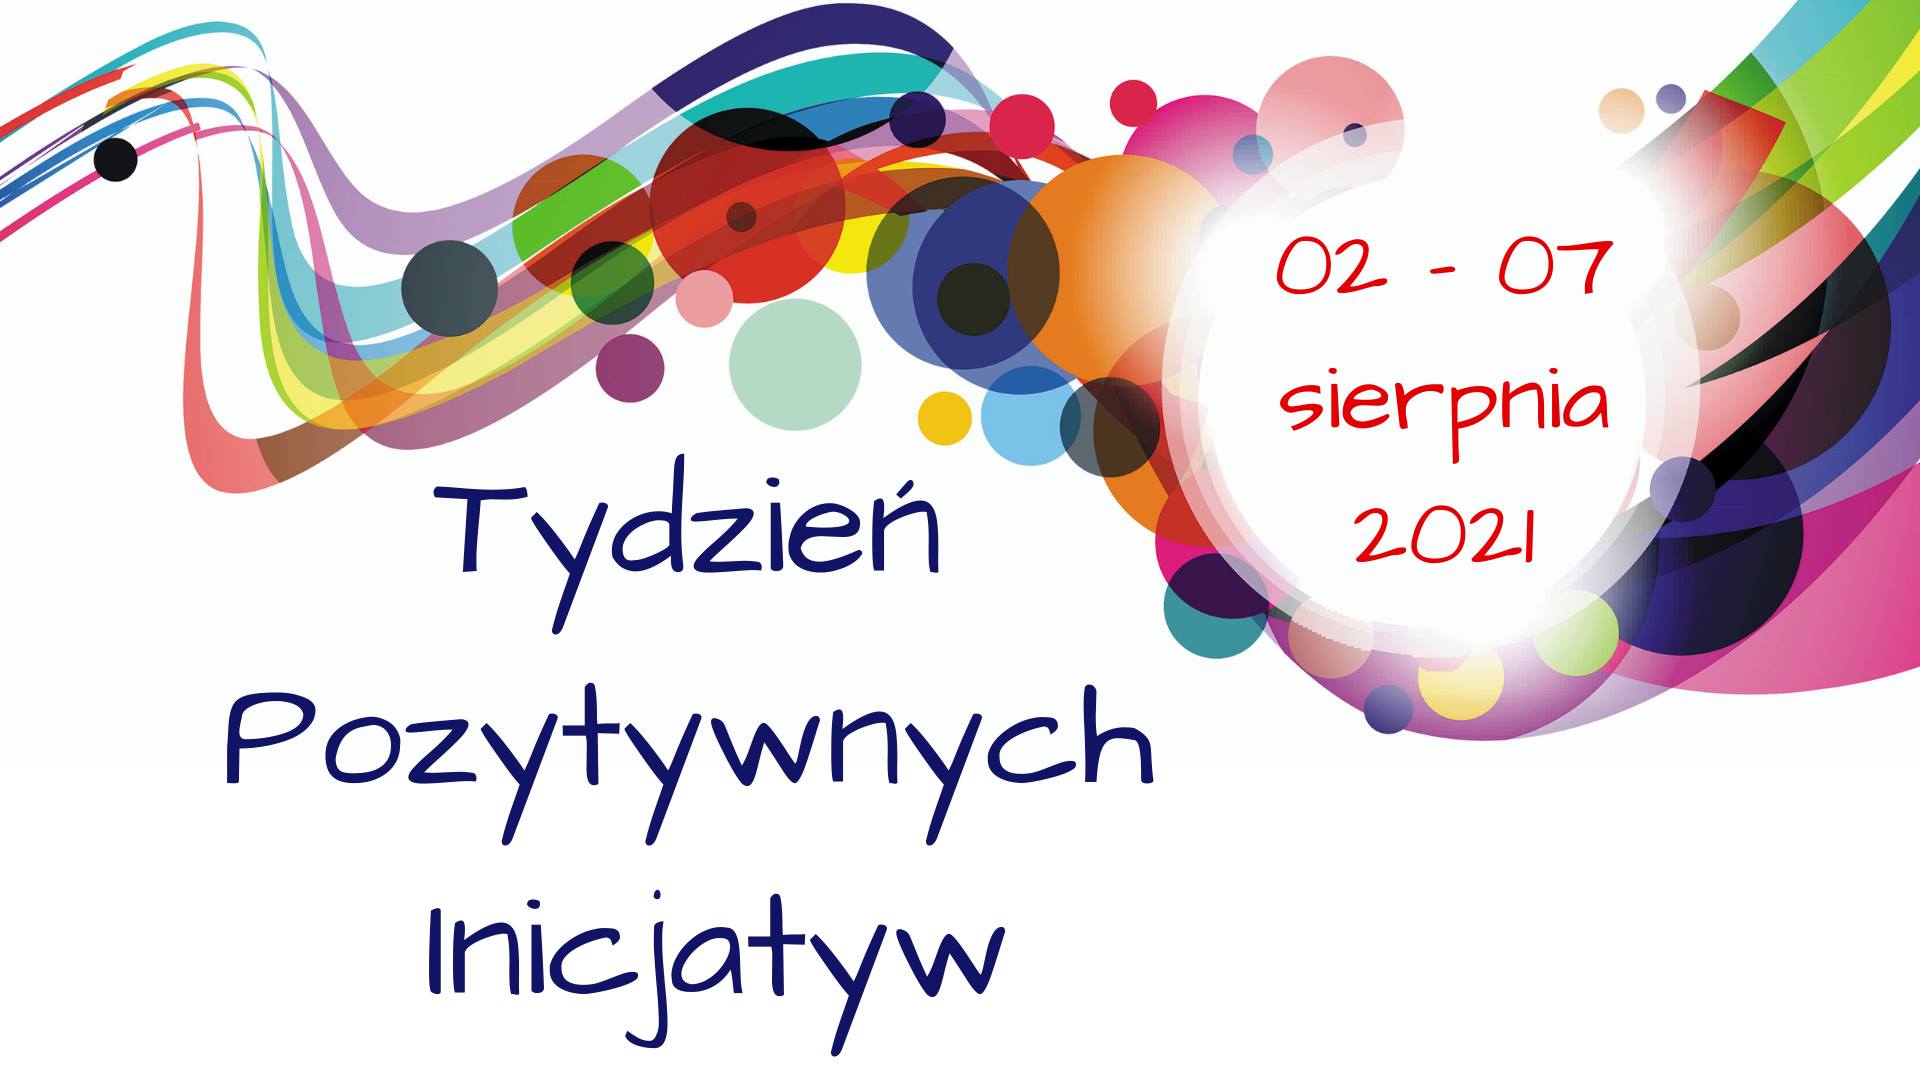 Baner wydarzenia z napisem Tydzień Pozytywnych Inicjatyw i datą wydarzenia.